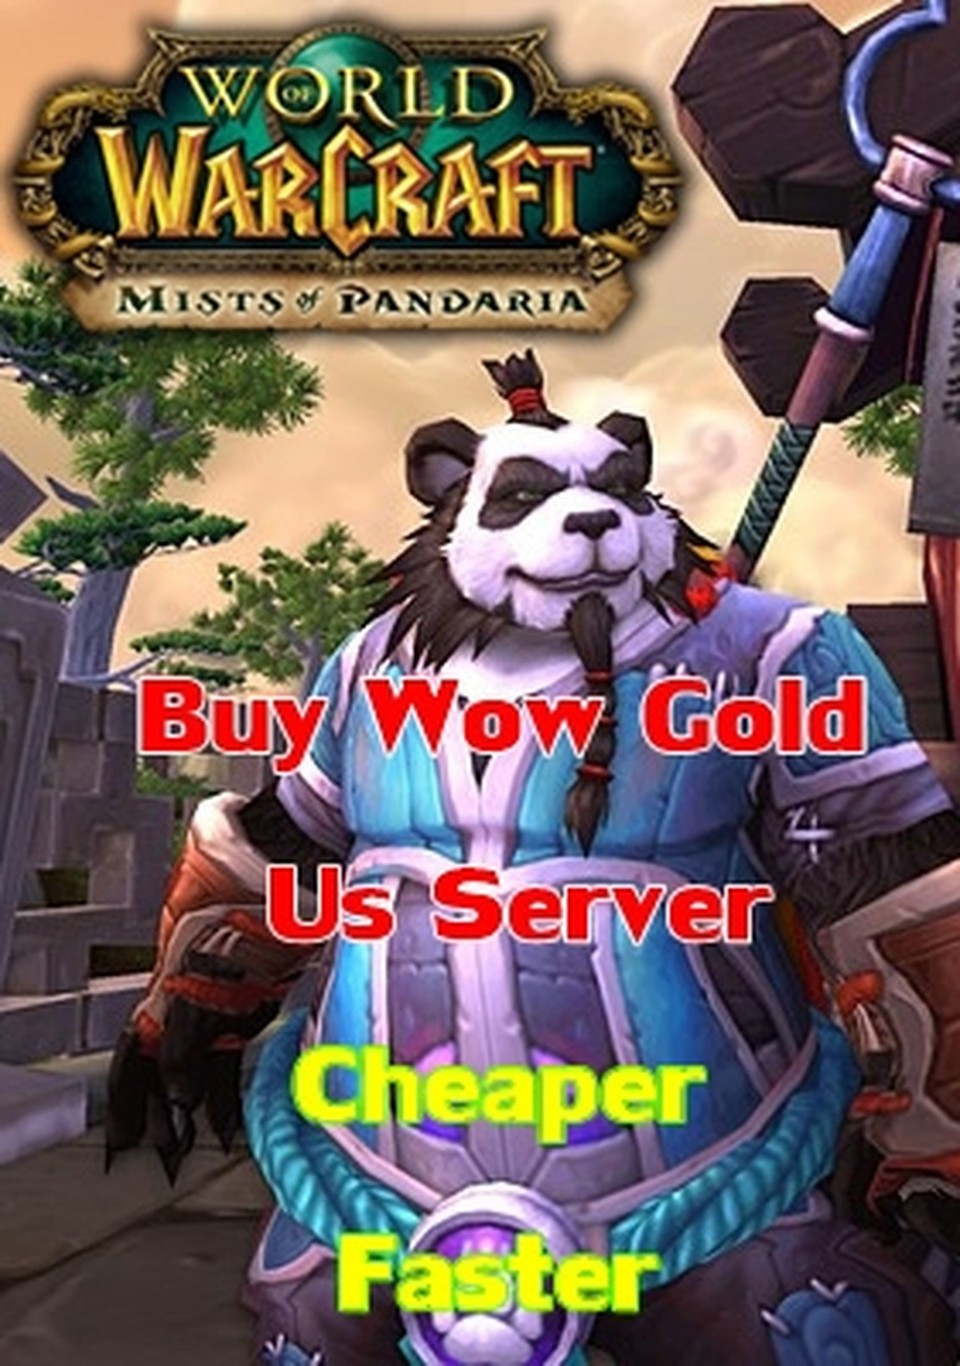 Auch fürs neue World-of-Warcraft-Addon Mists of Pandaria gibt’s schon reichlich Gold-Angebote.